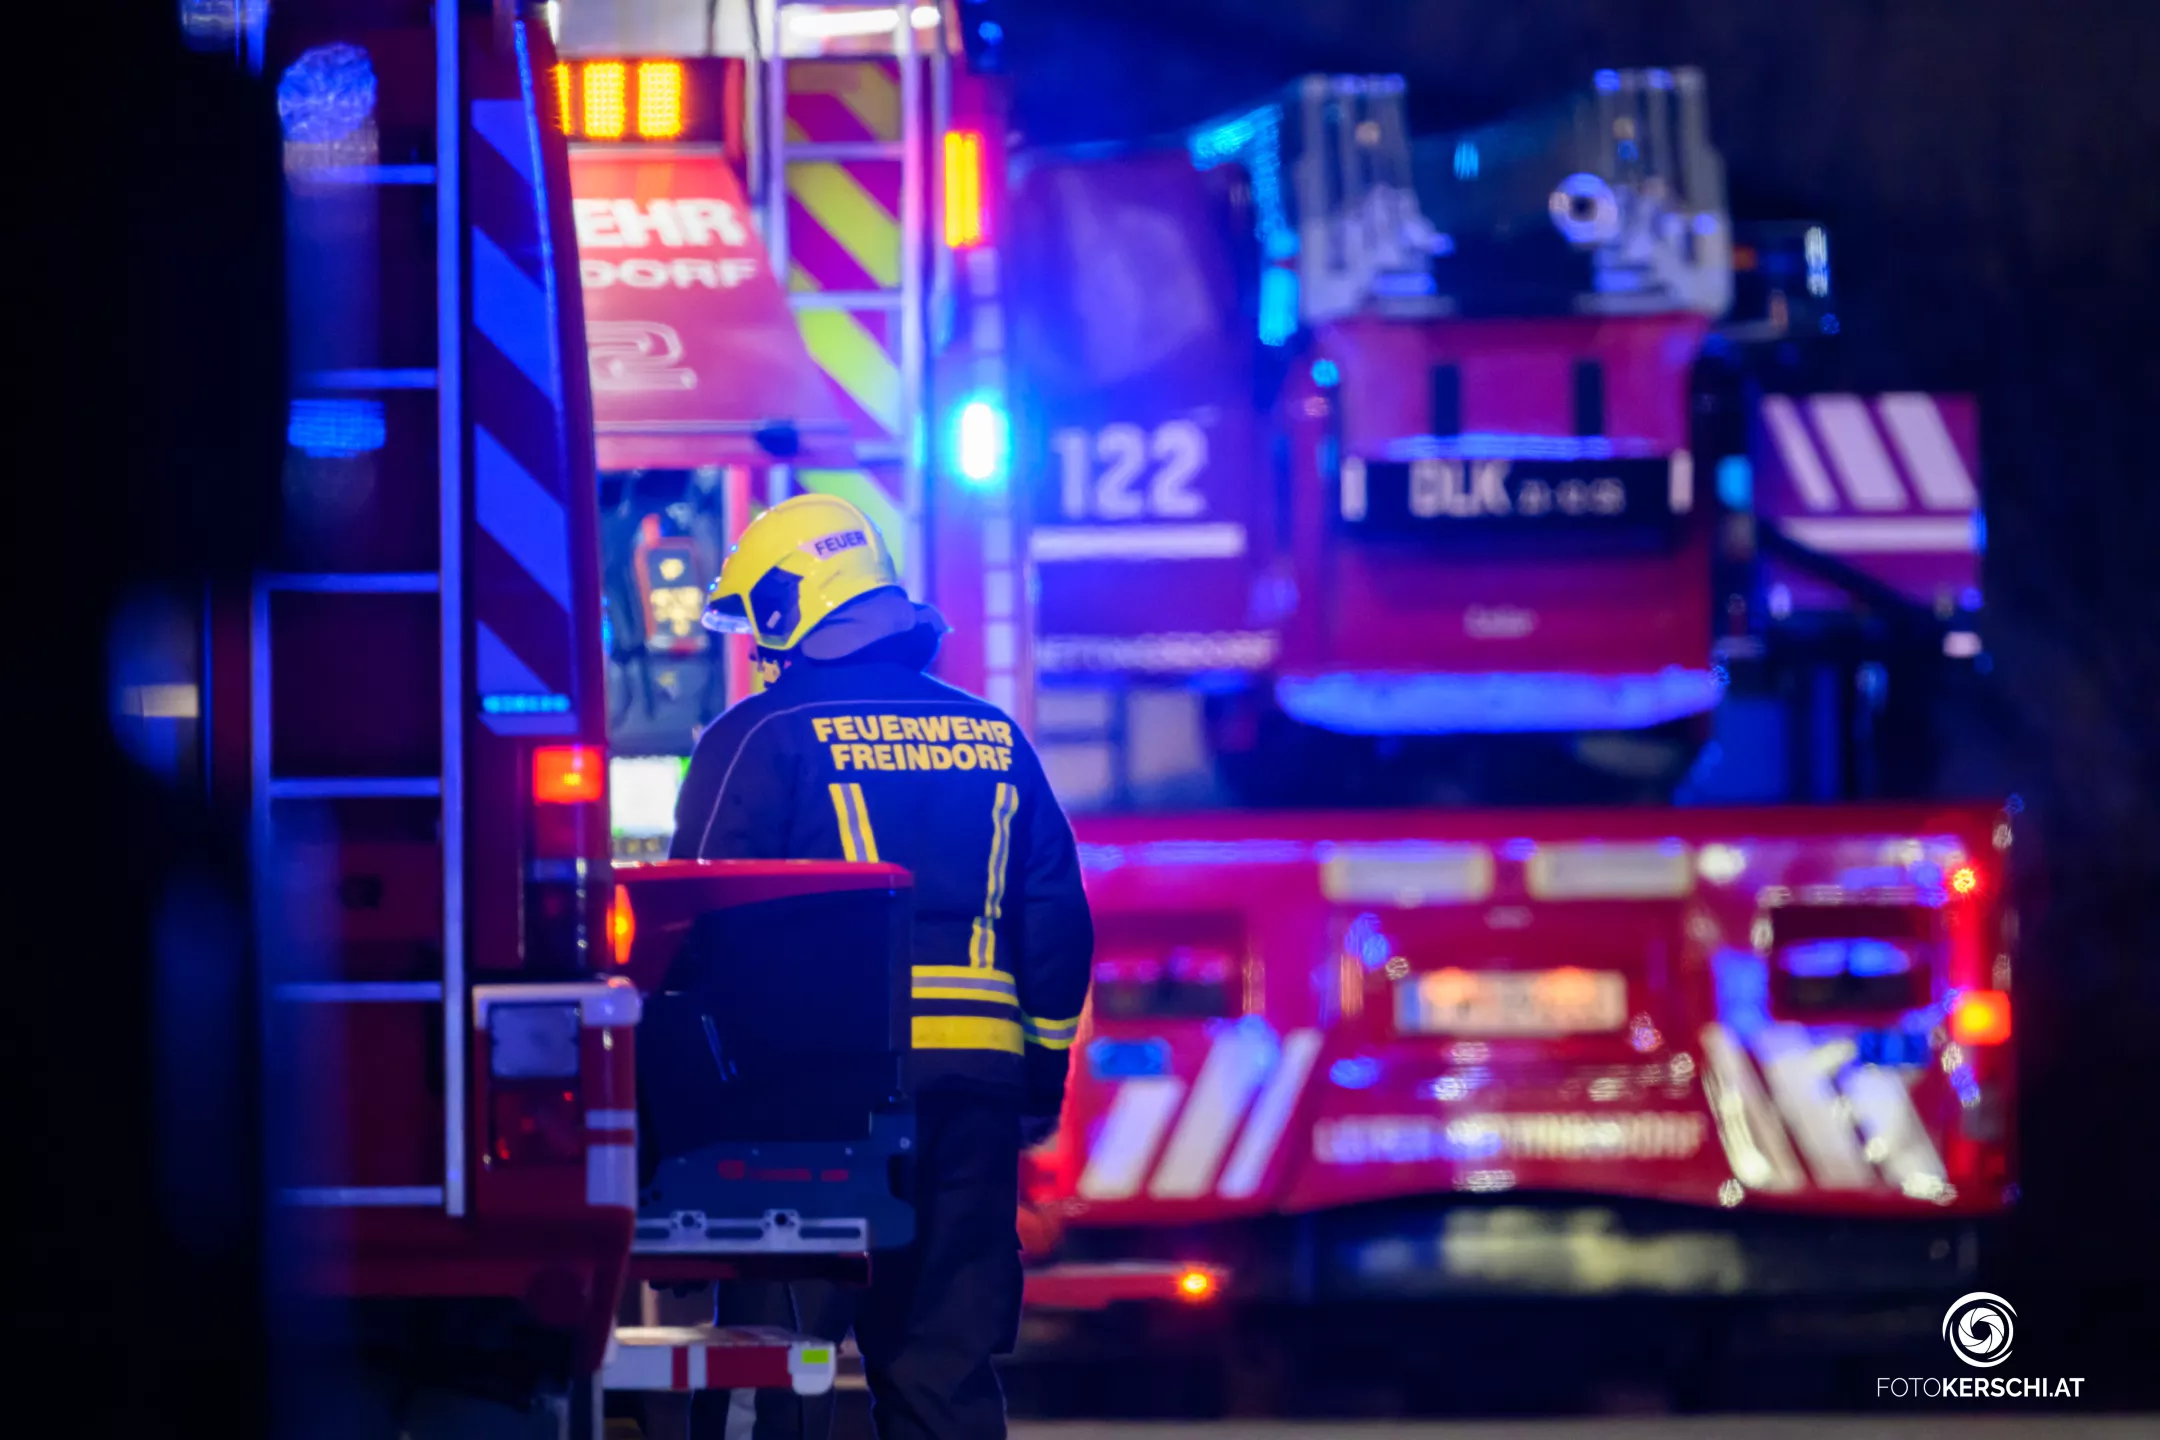 Bürobrand in Ansfelden: Mitarbeiter entdeckt Feuer rechtzeitig